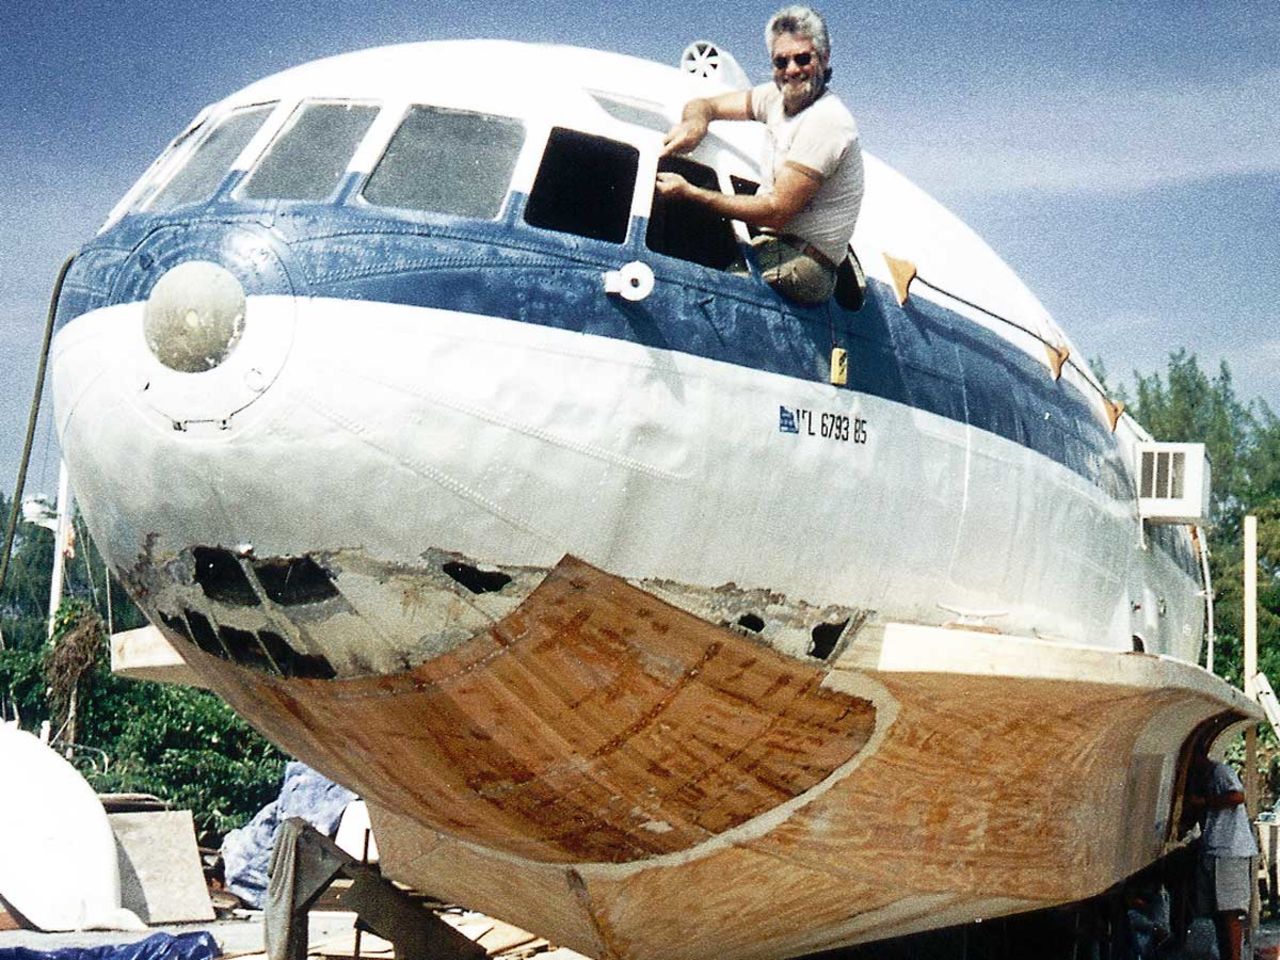 El Dave Drimmer, reconstruyendo este "barco-avión" en 1994.